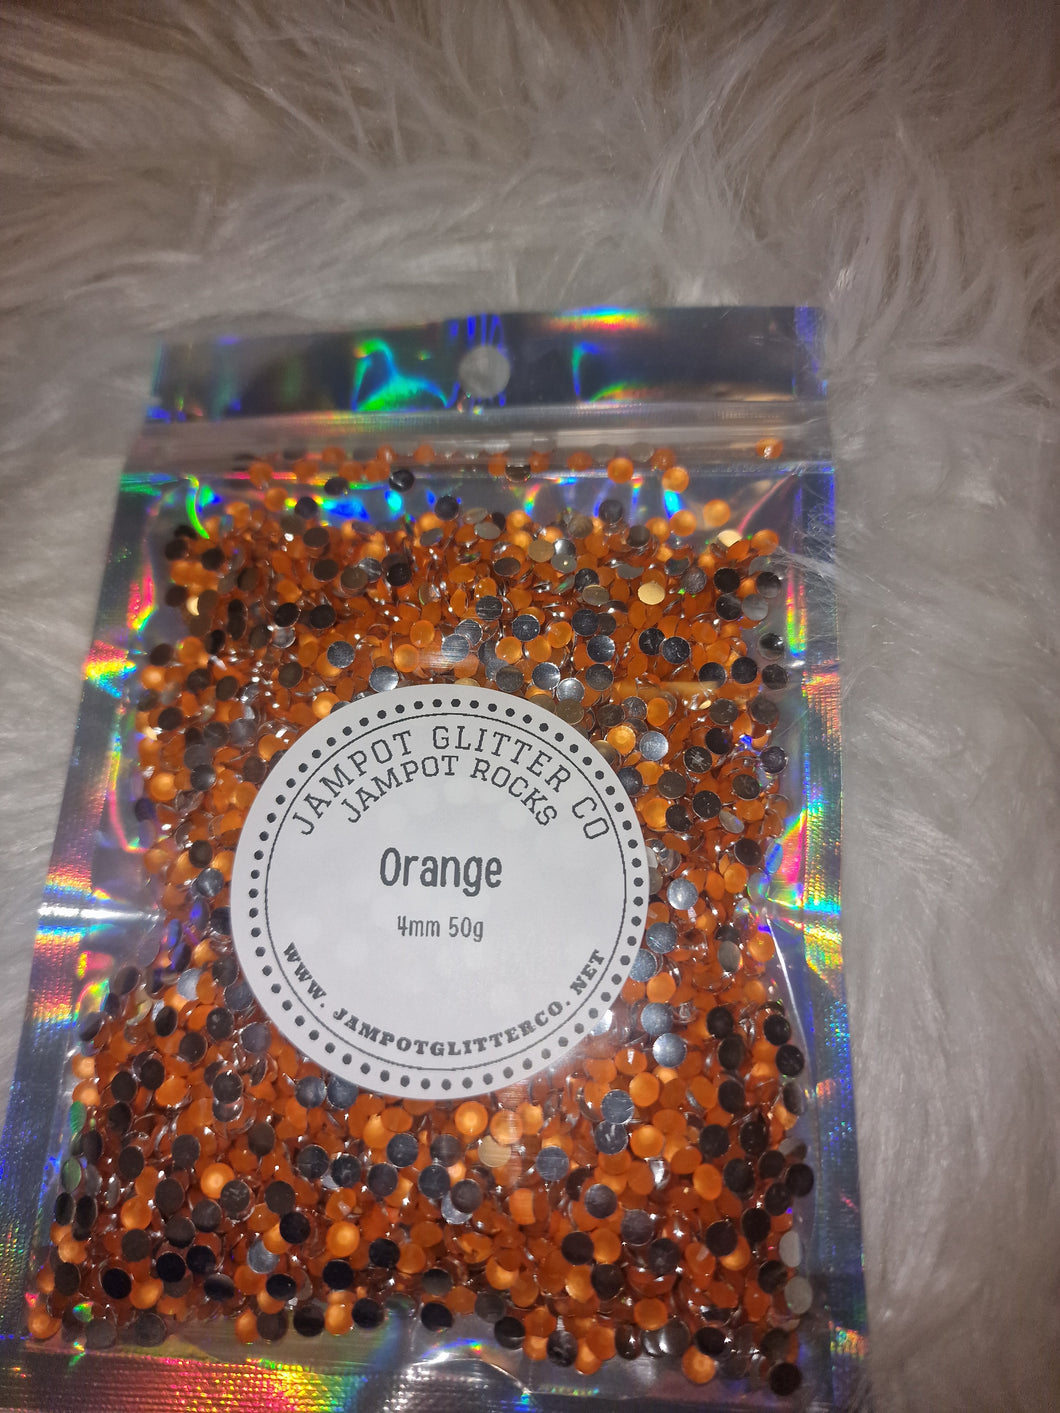 Orange 4mm 50g bag